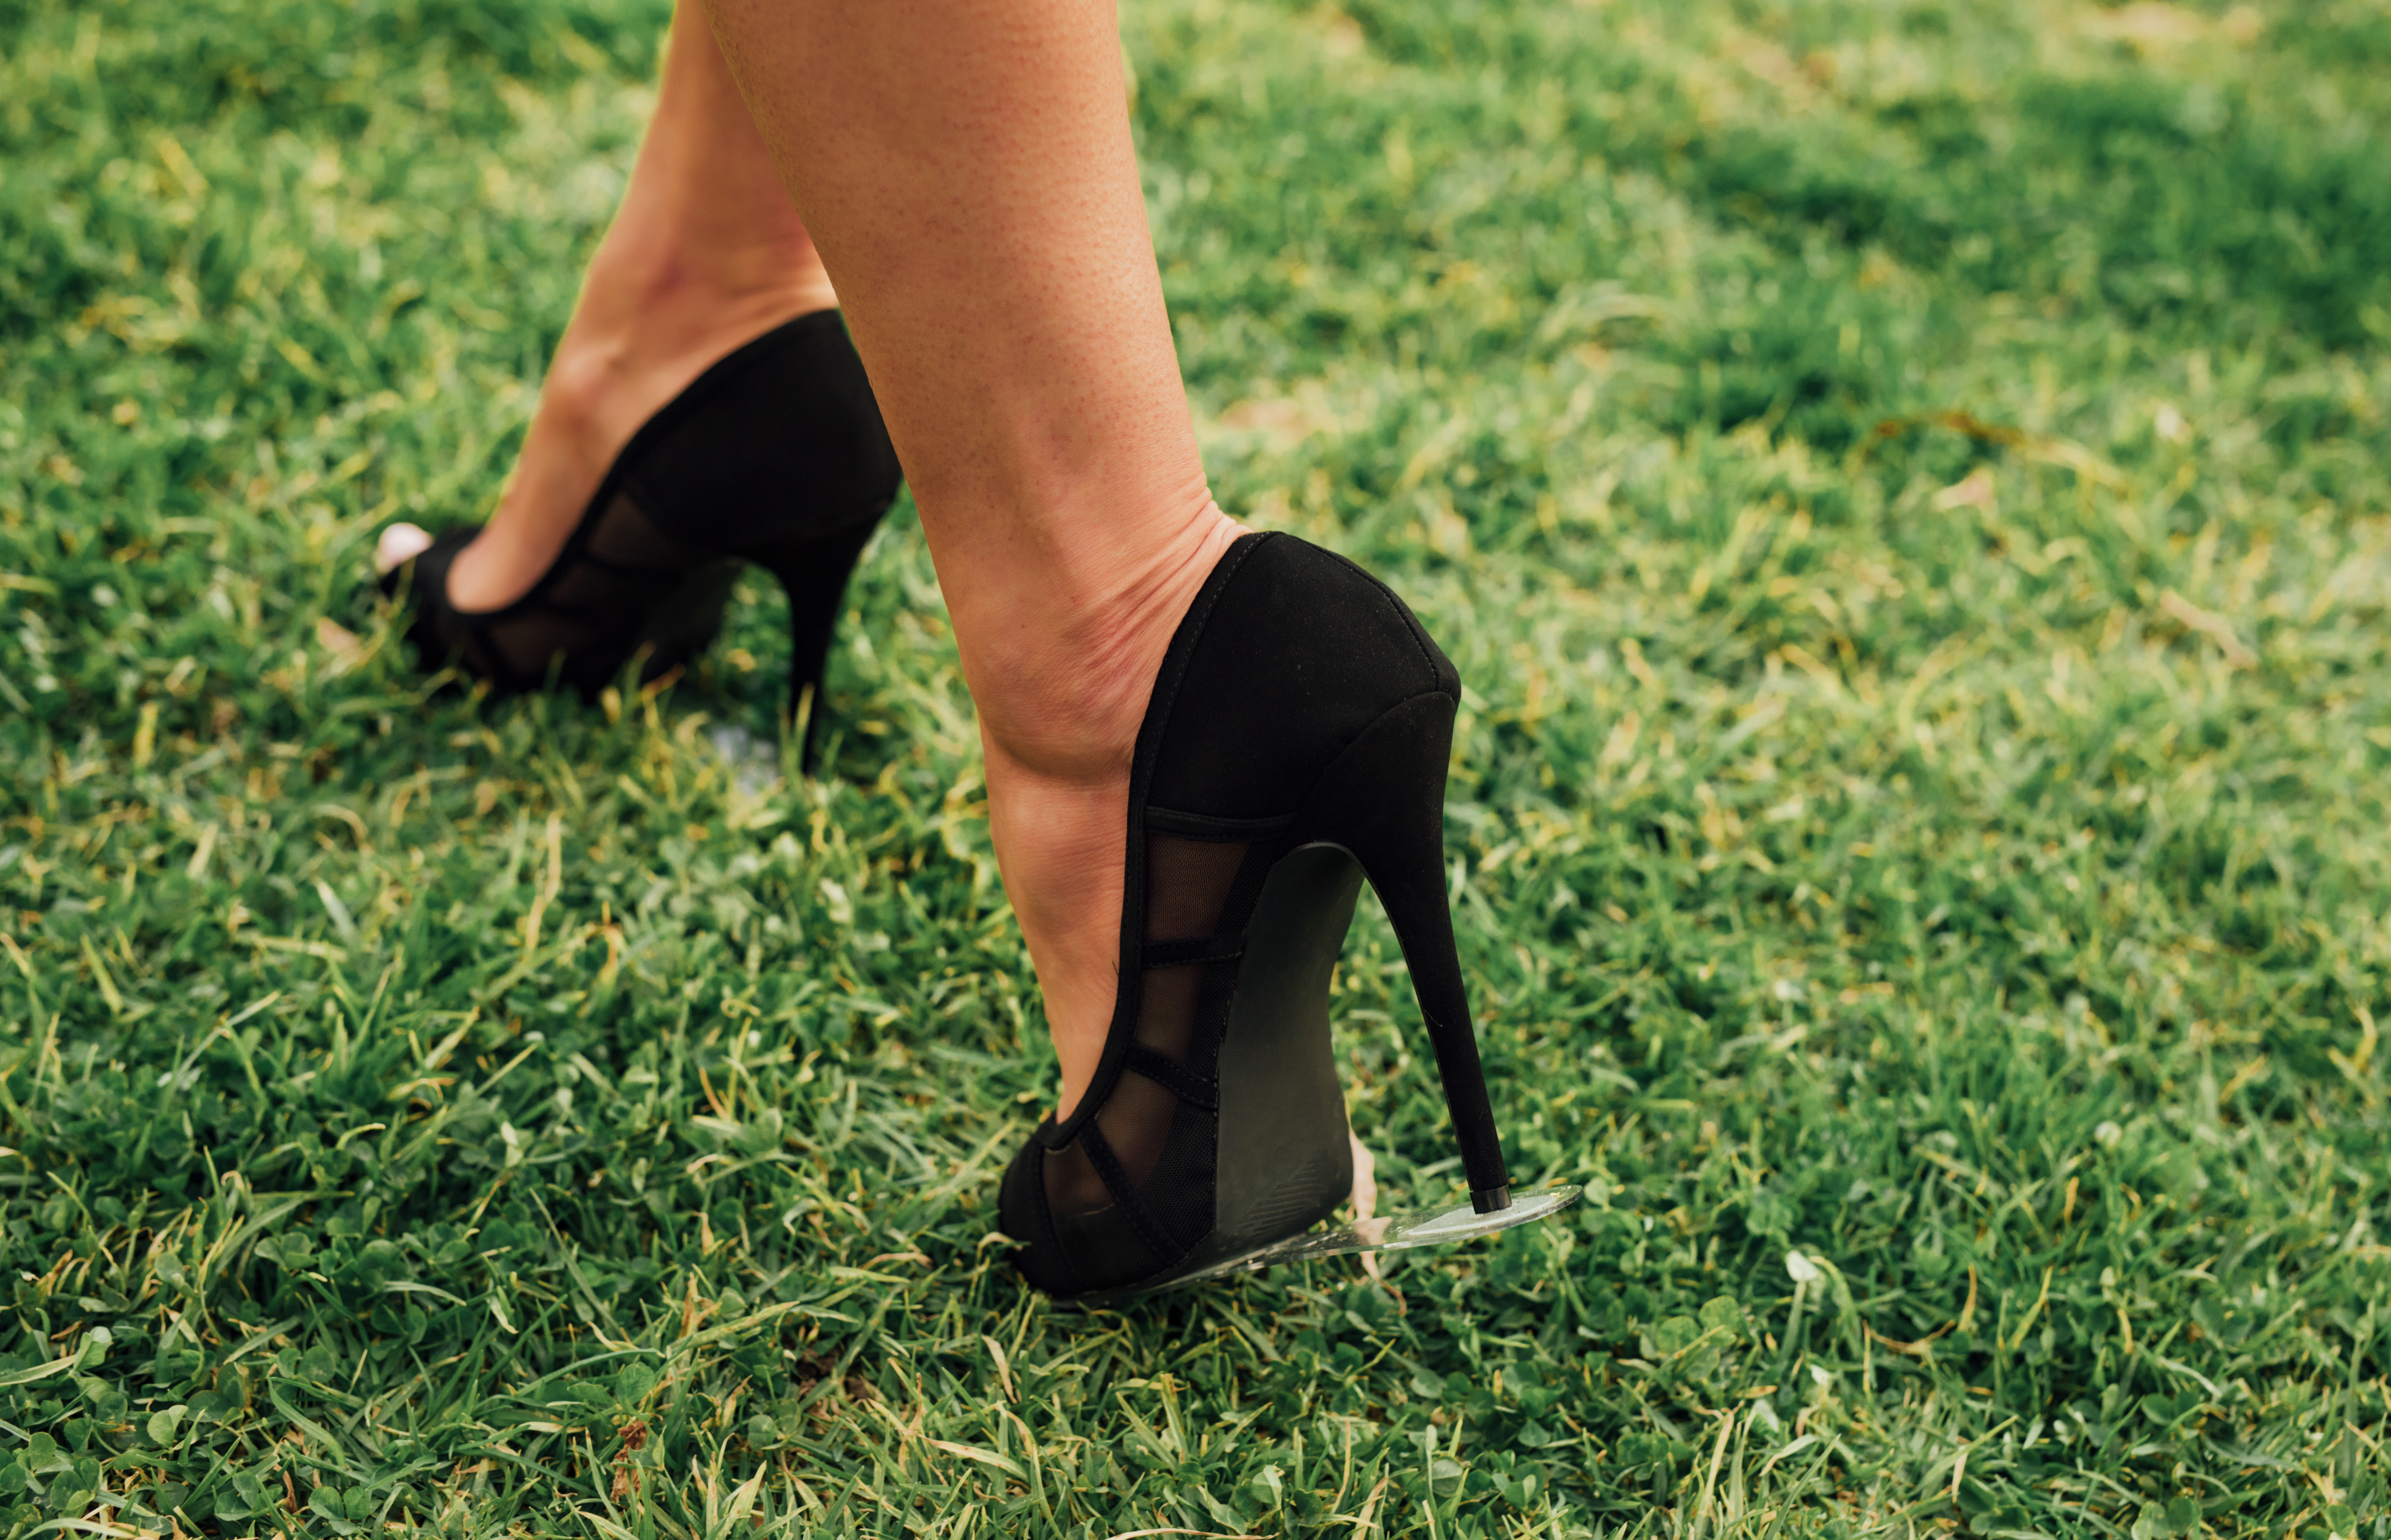 stiletto heel tips for grass